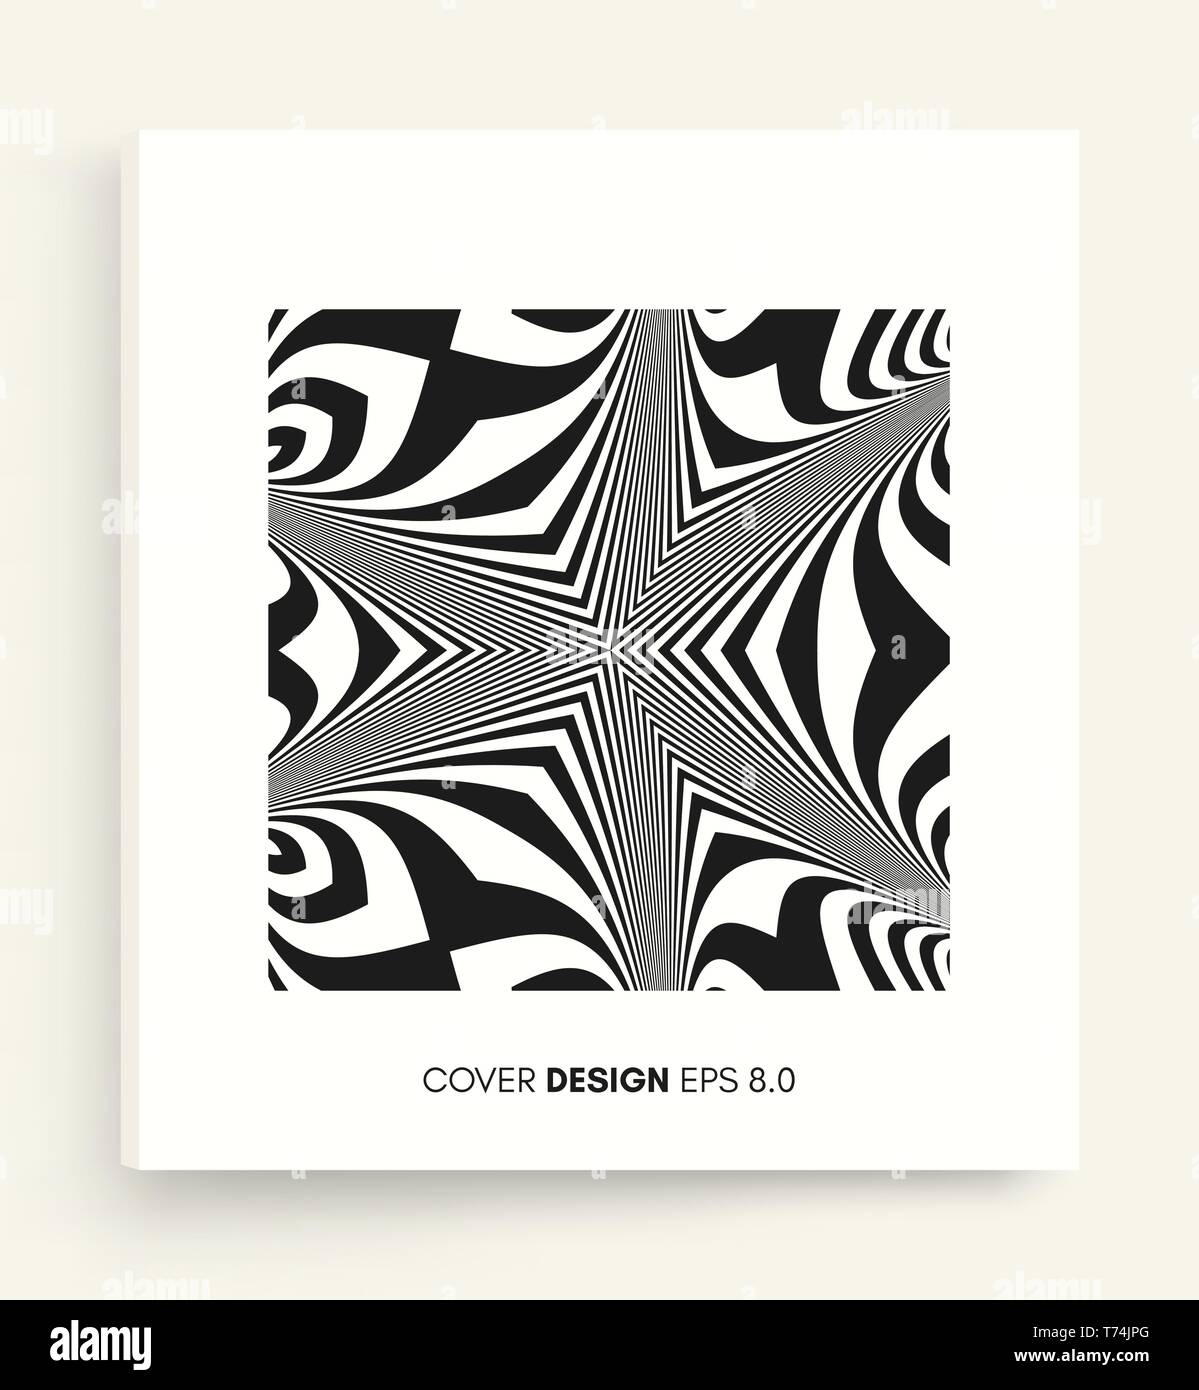 Cover Design modello. Design in bianco e nero. Abstract sfondo striato. Illustrazione Vettoriale. Illustrazione Vettoriale